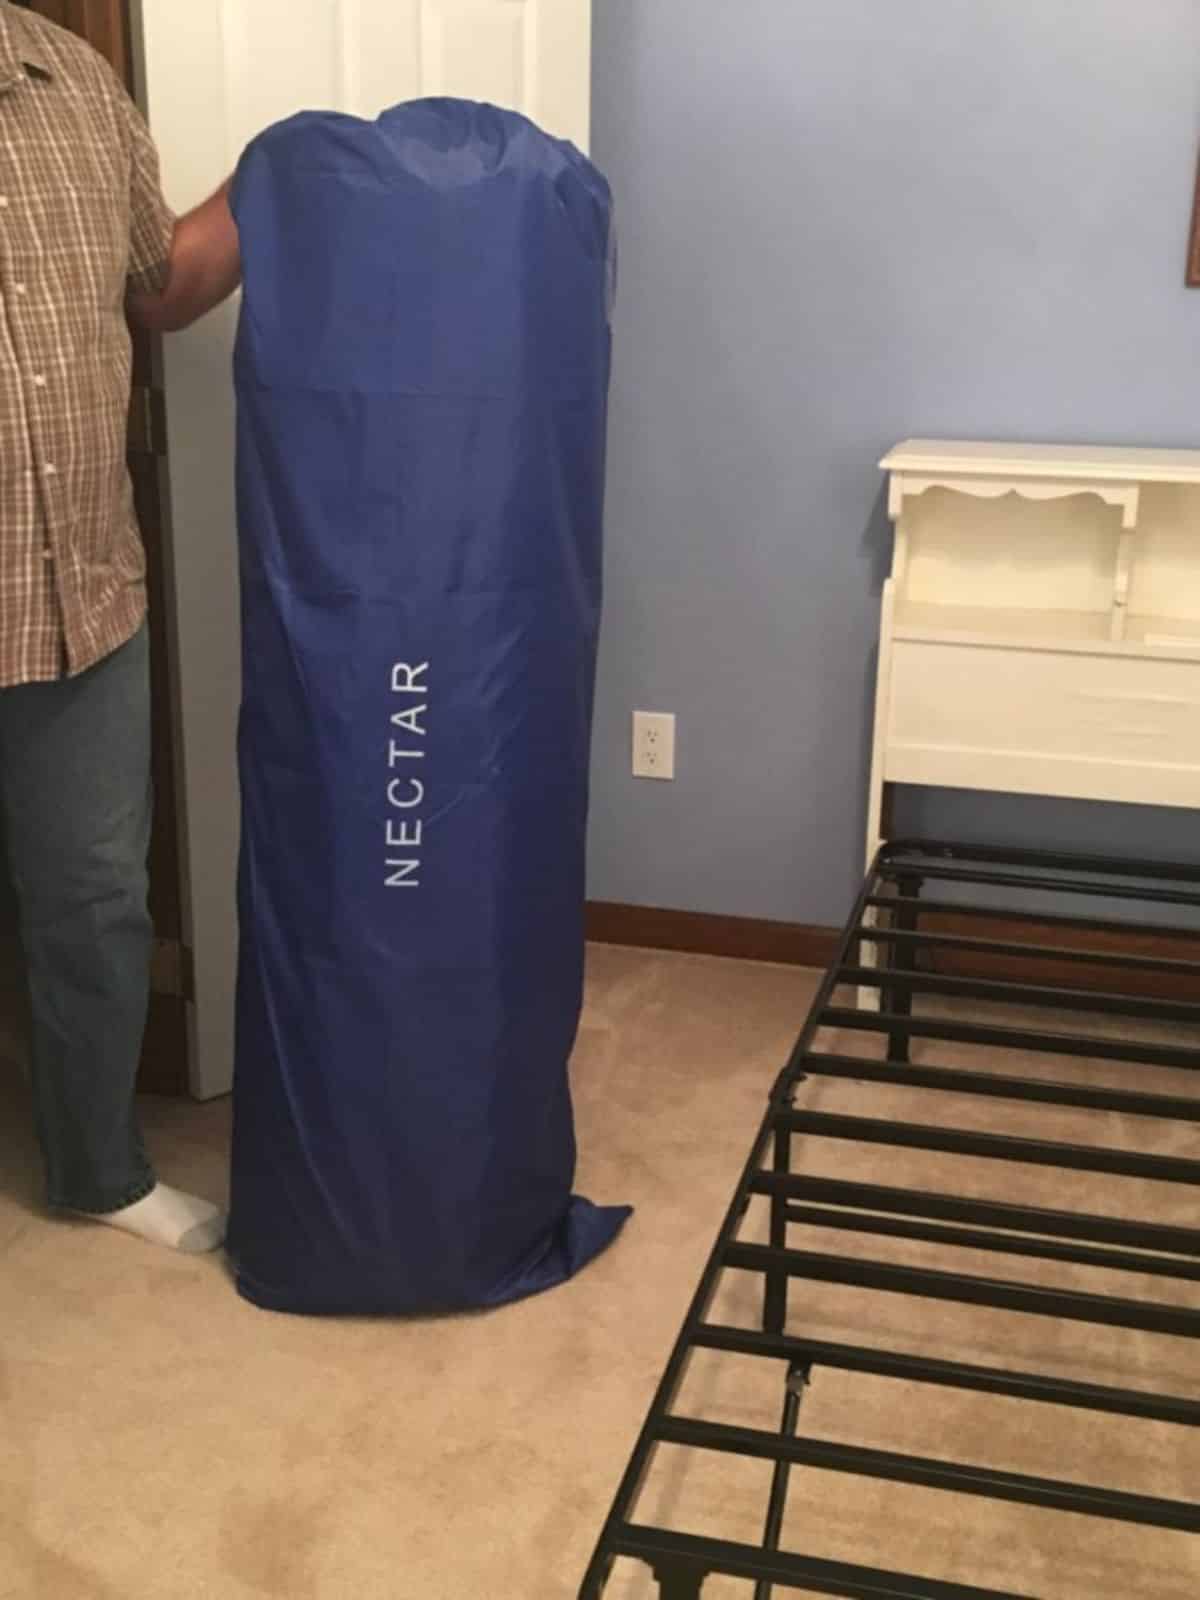 mattress in a bag.